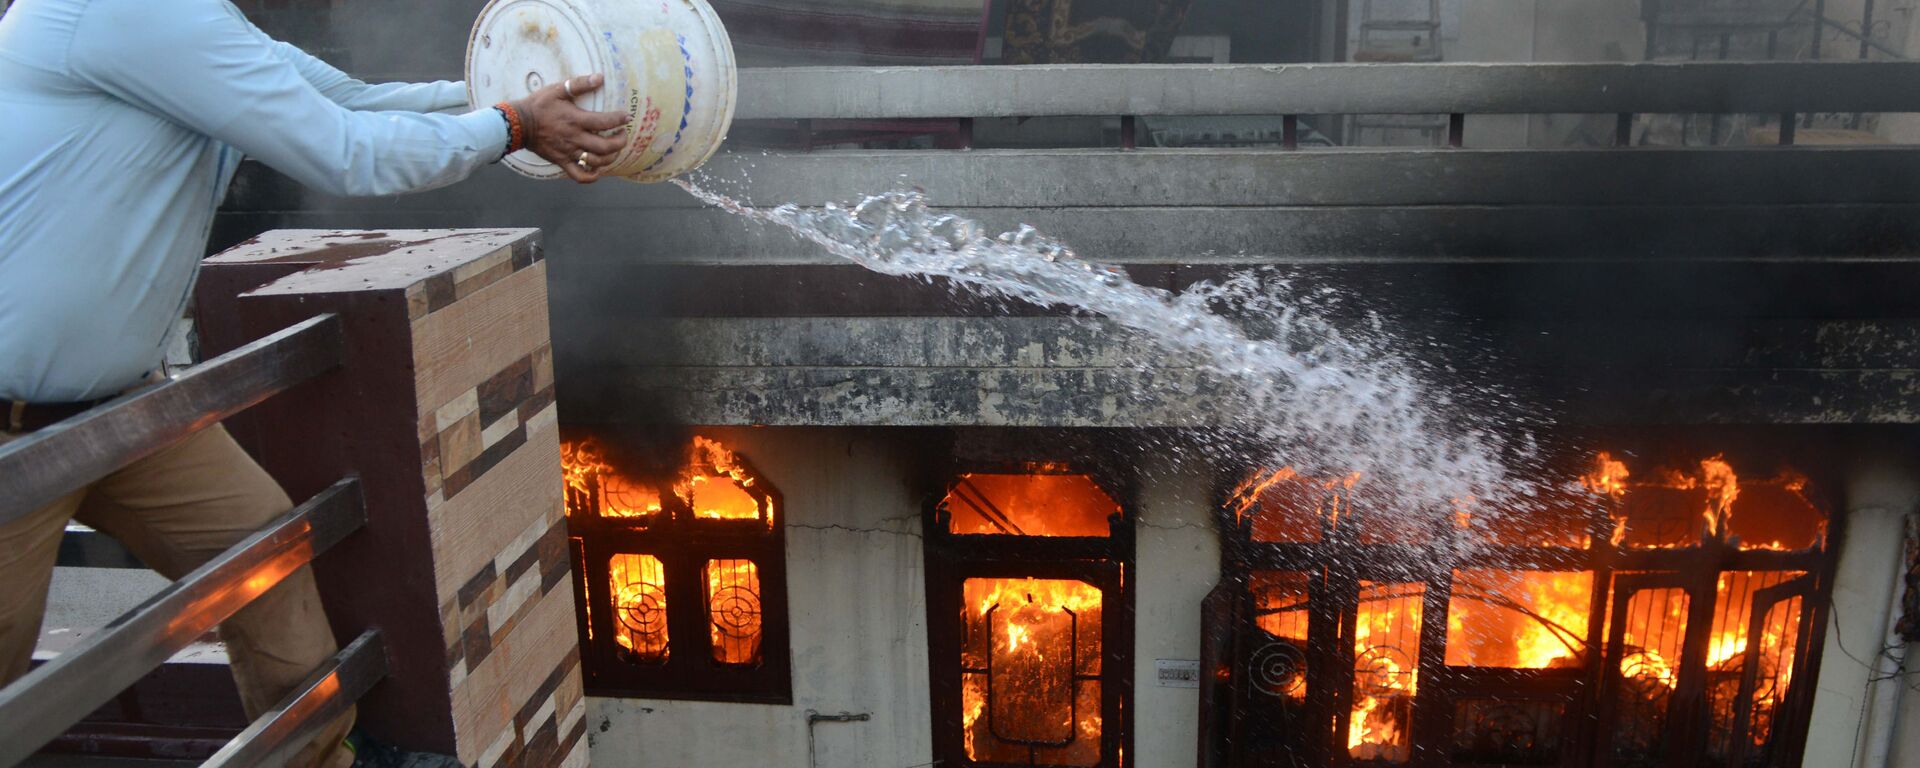 أحد السكان يحاول إخماد حريق في متجر كهربائي في أمريتسار، الهند في 20 مايو/ أيار 2018 - سبوتنيك عربي, 1920, 23.04.2021